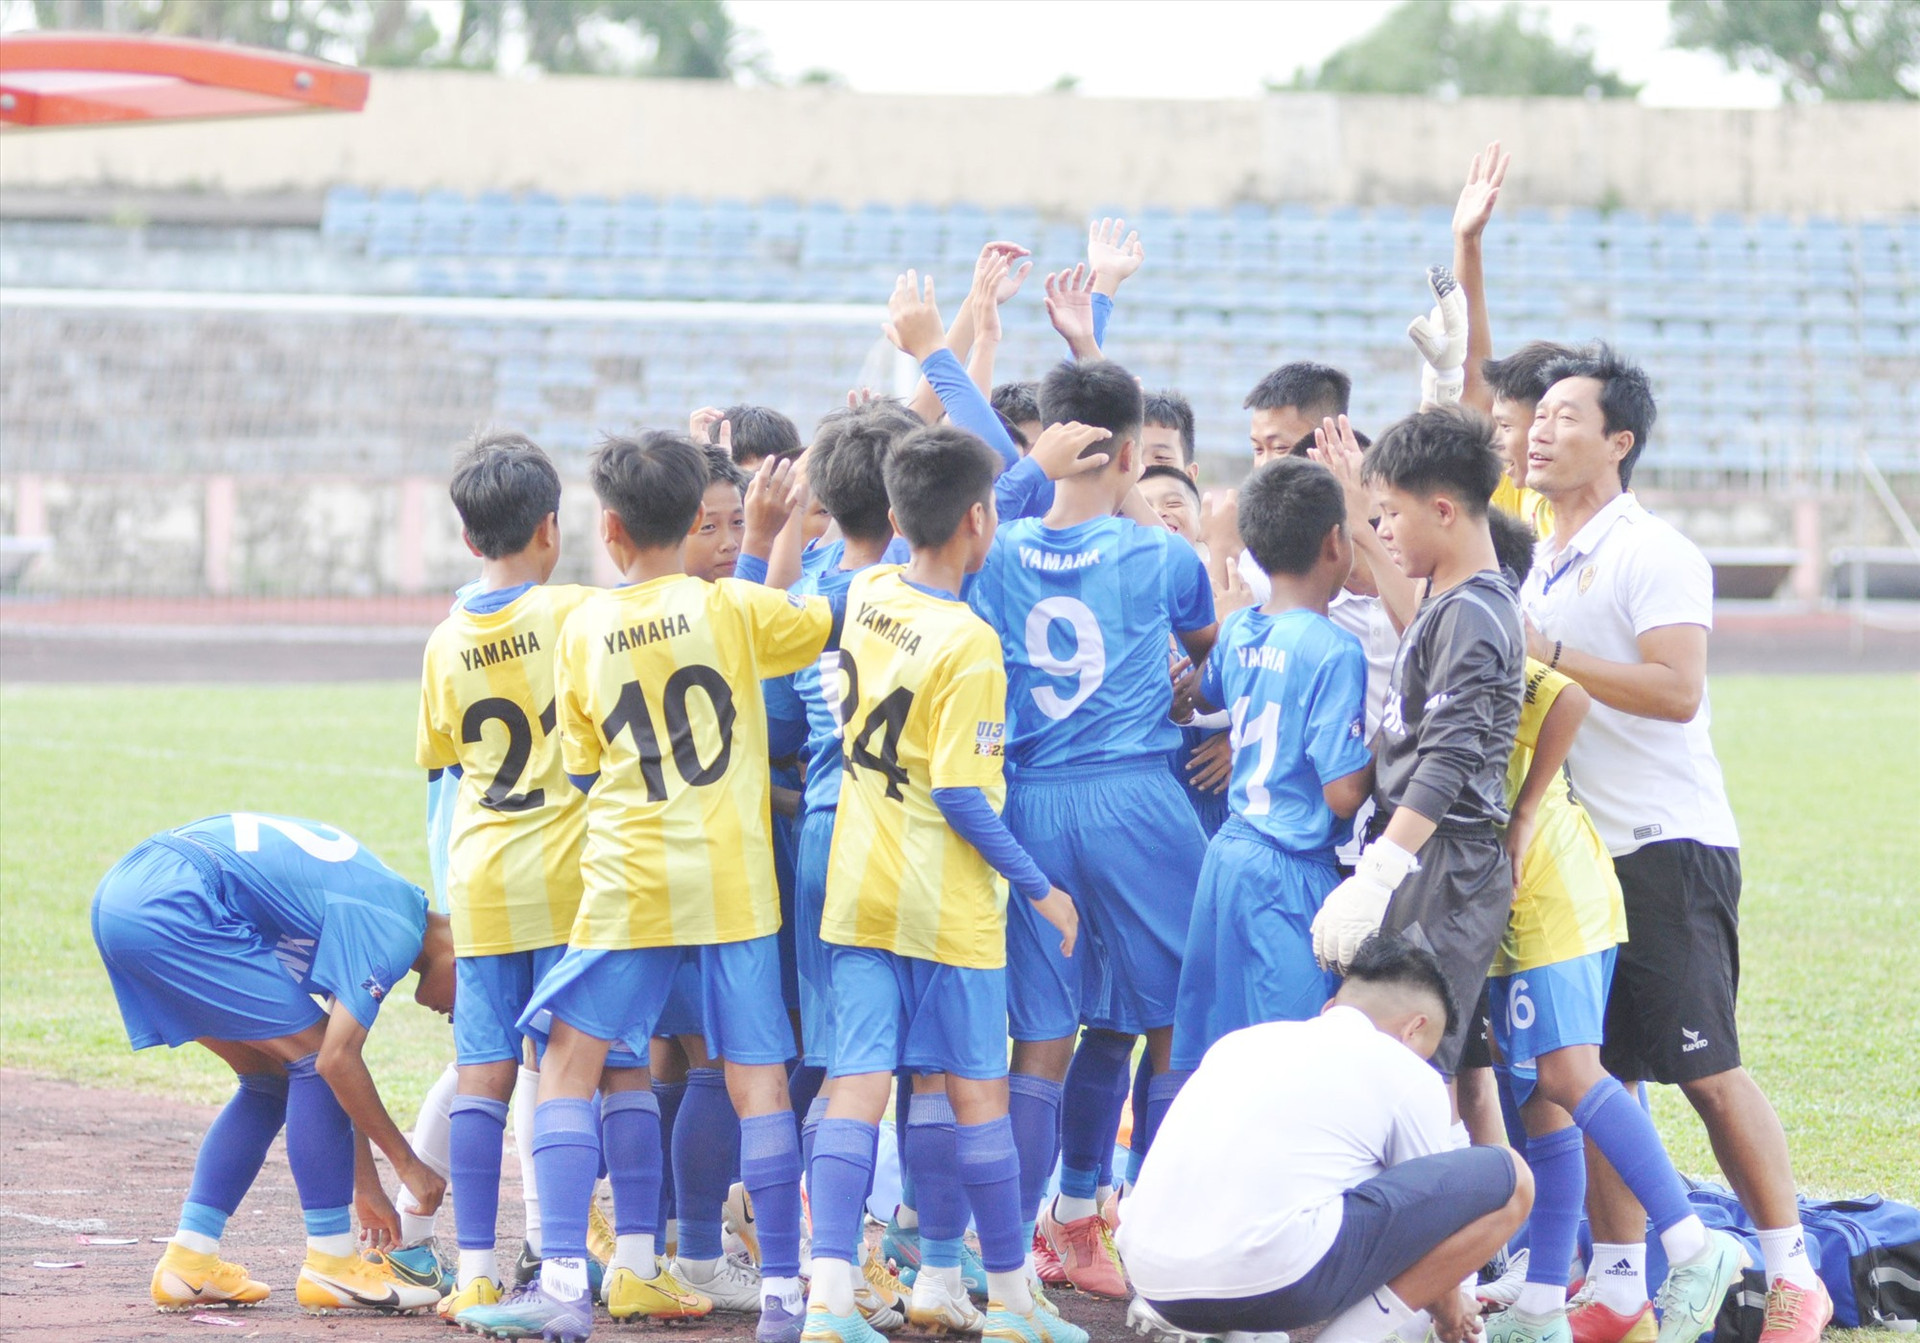 Đội bóng U13 Quảng Nam tham gia giải bóng đá Thiếu niên Cúp Yamaha năm 2023 quốc gia tại Quảng Nam. Ảnh: A.S